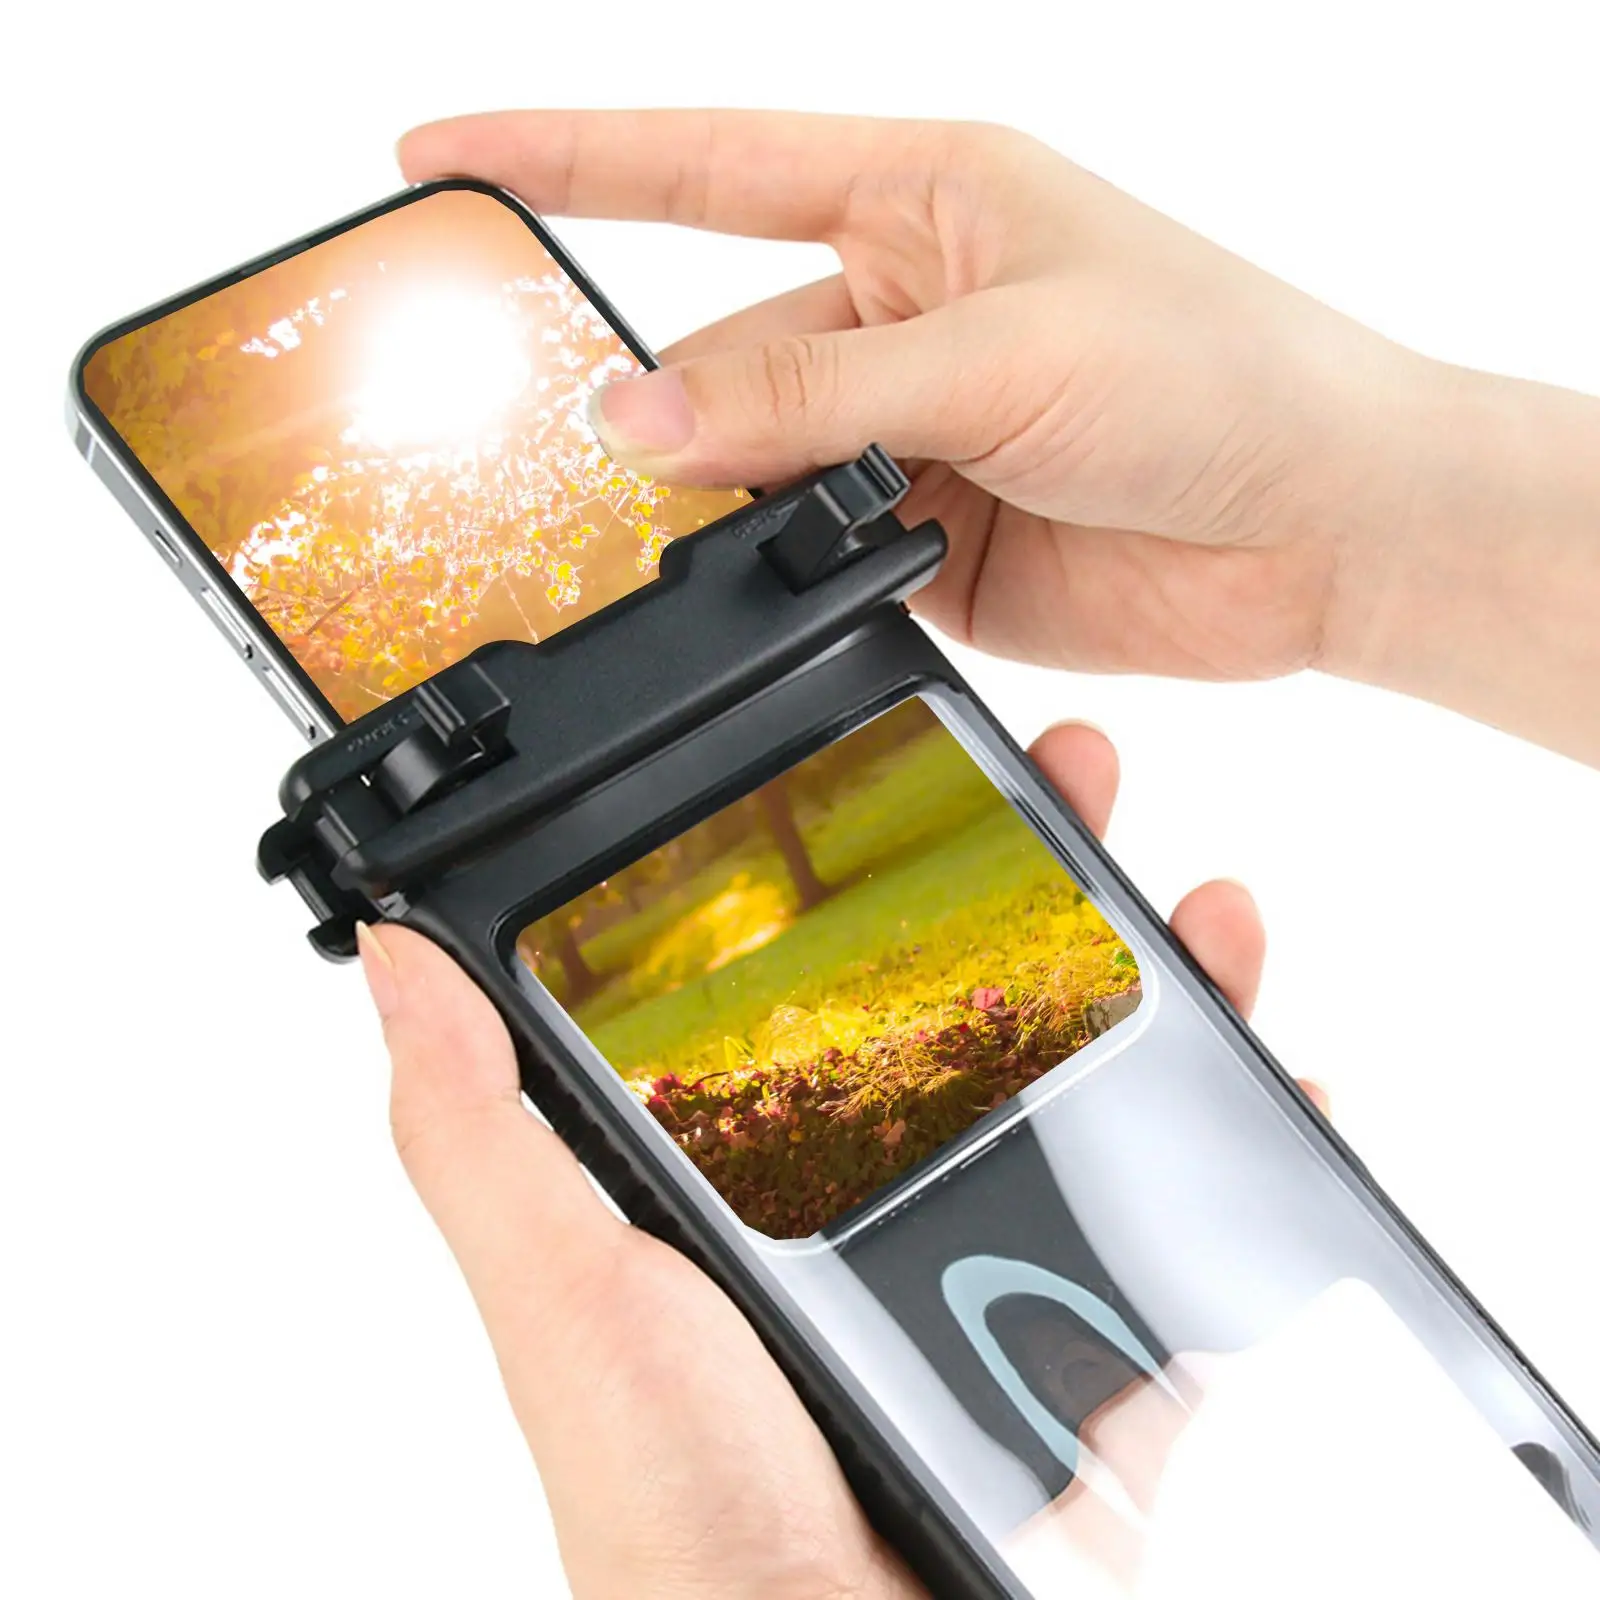 Underwater Waterproof Phone Case 6.7